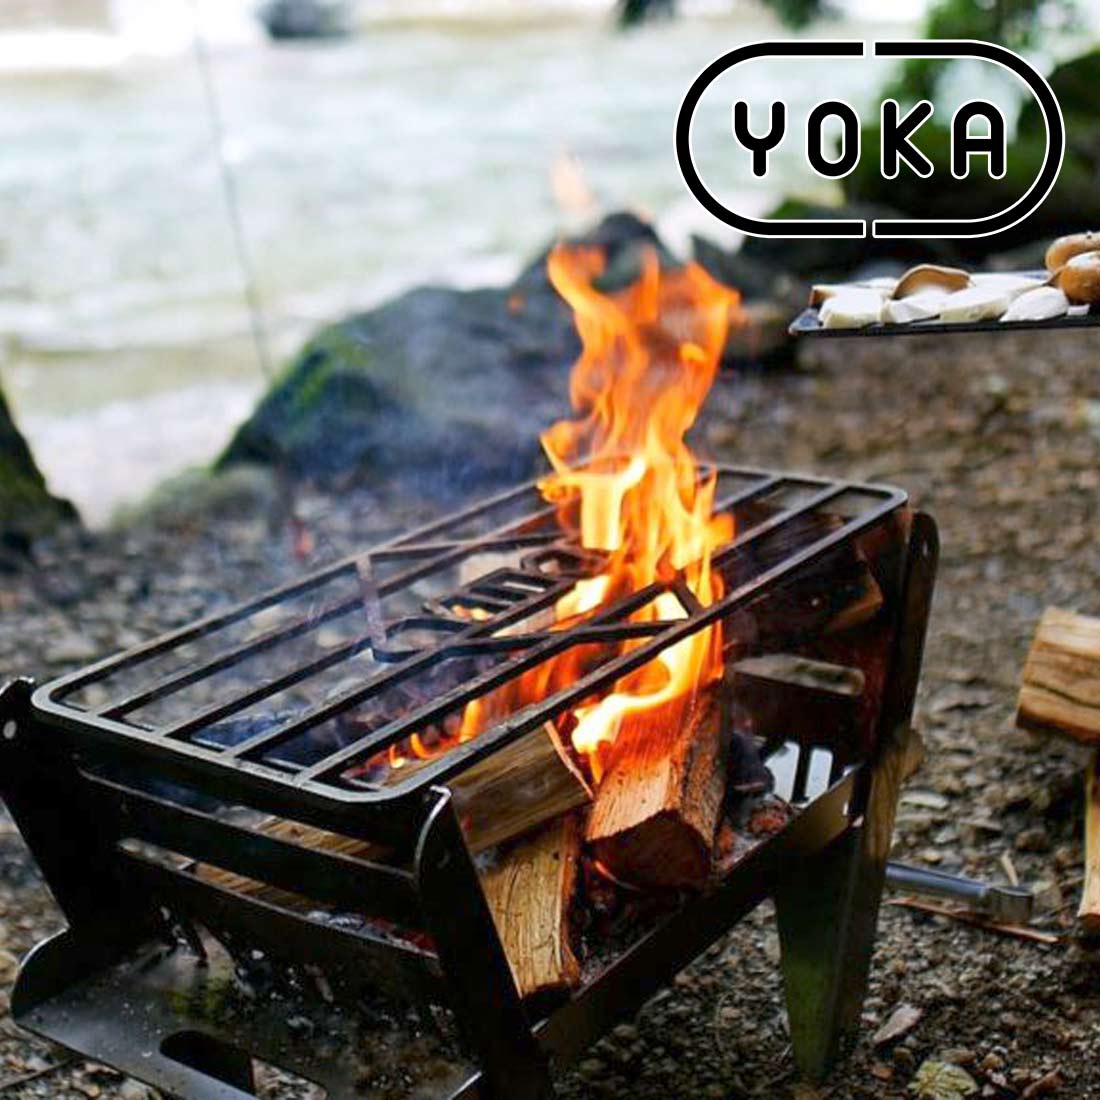 ヨカ YOKA クッキングファイヤーピットライト - バーベキュー・調理用品